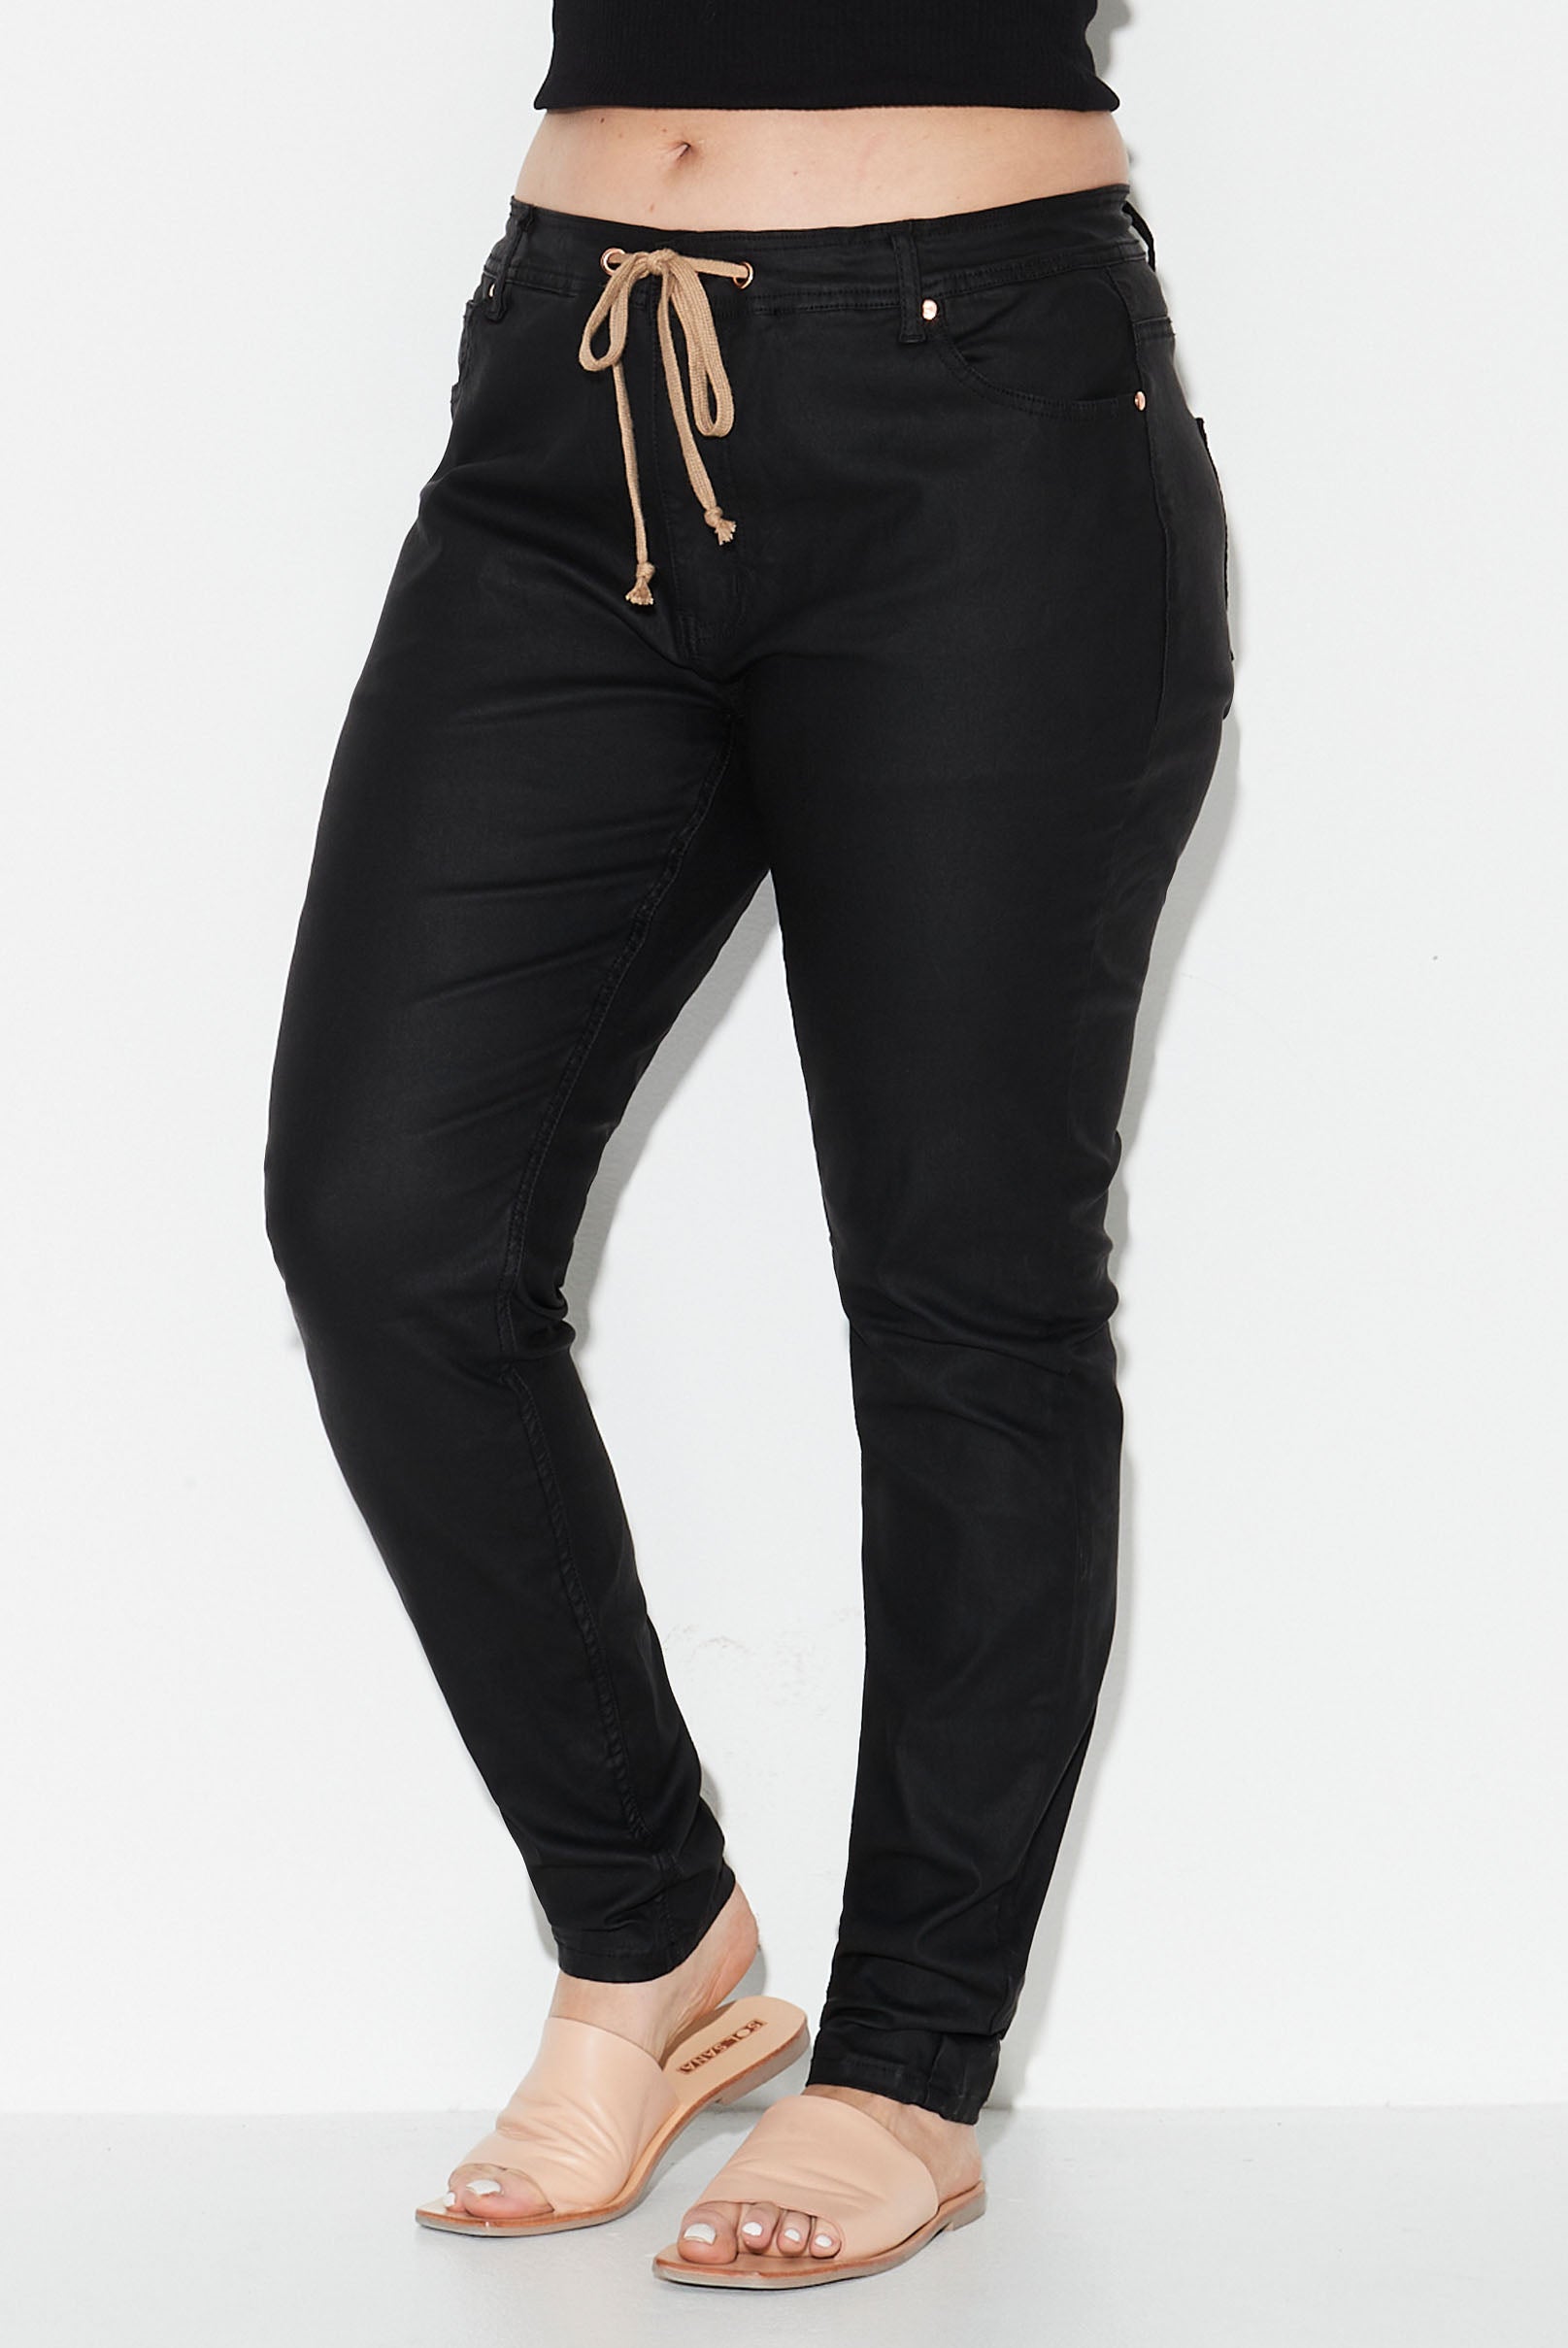 Model wears black coated denim plus size jeans 